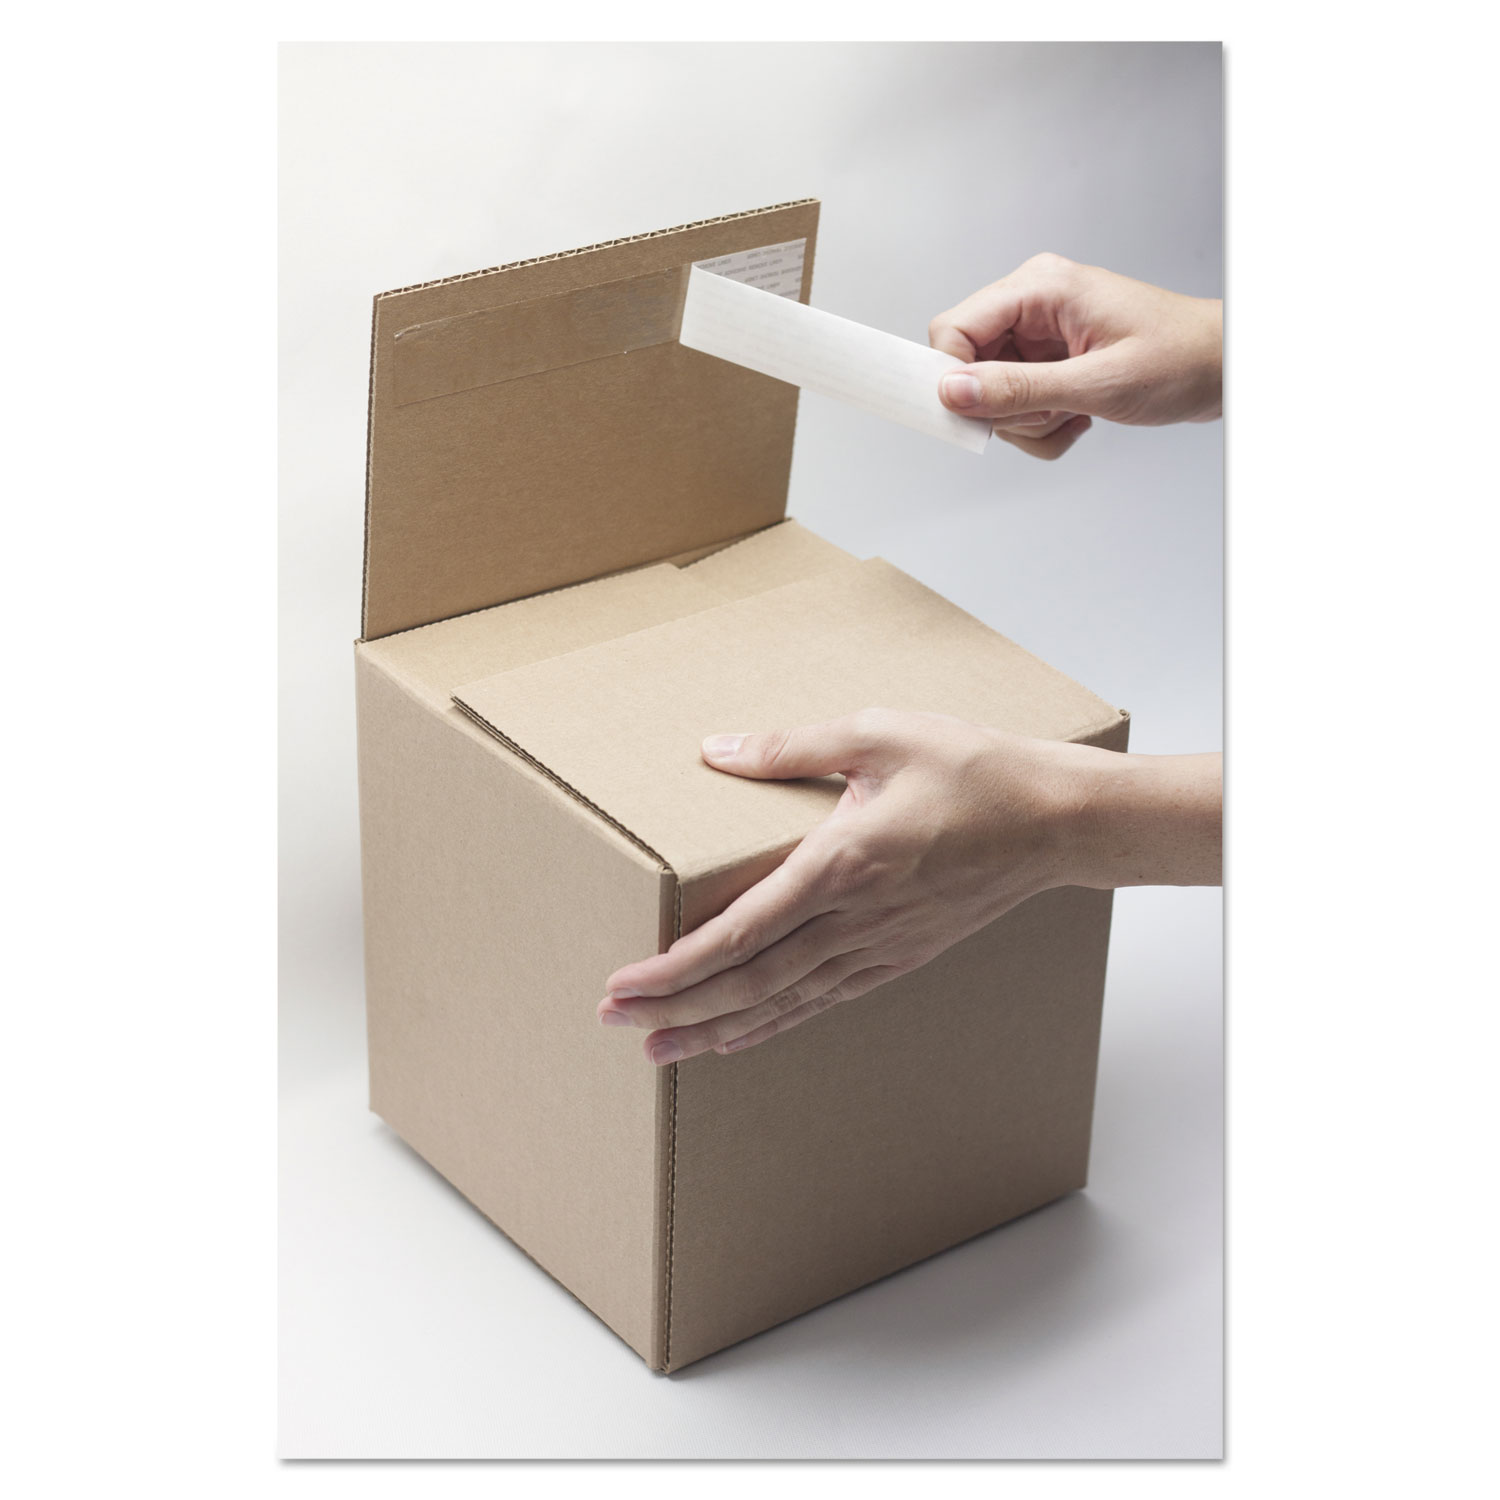 Self-Sealing Shipping Boxes, 8l x 6w x 6h, Brown Kraft, 8/Carton